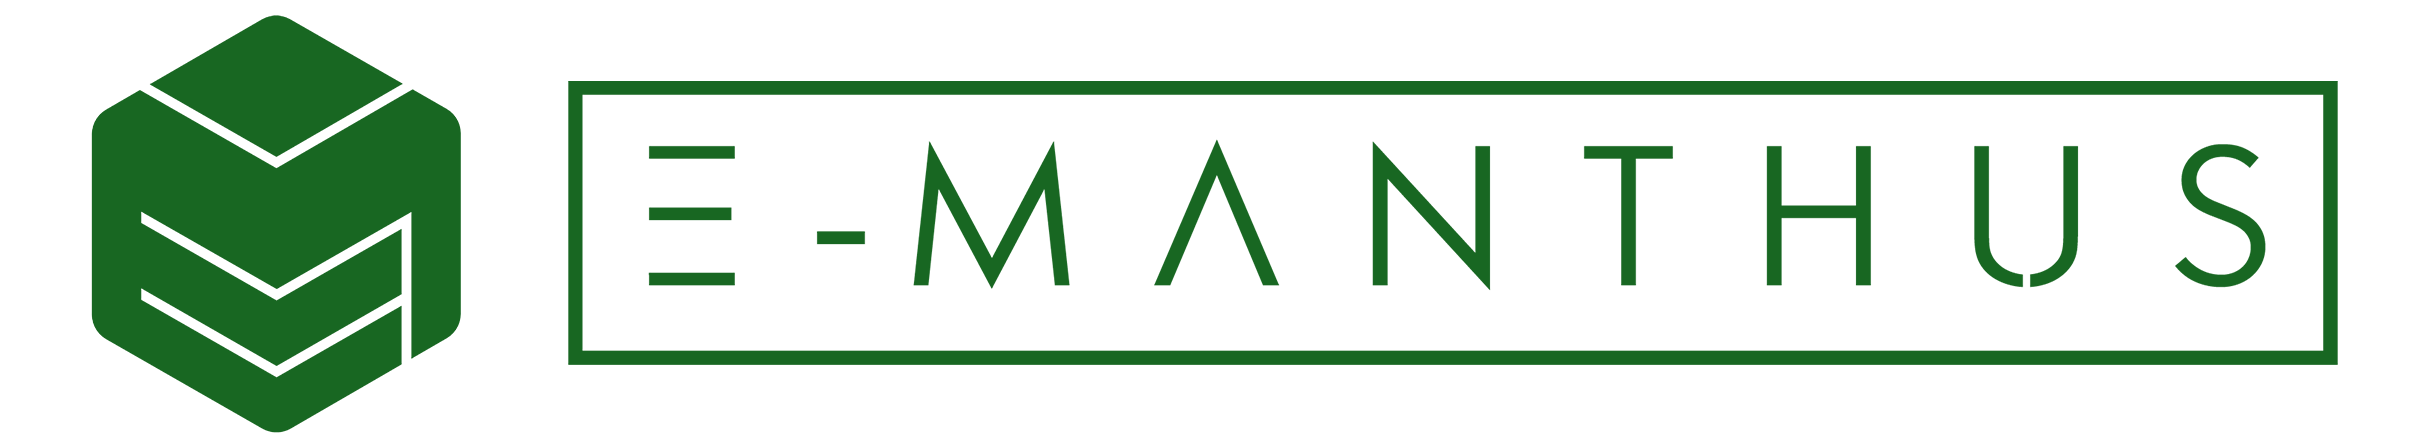 E-manthus logo